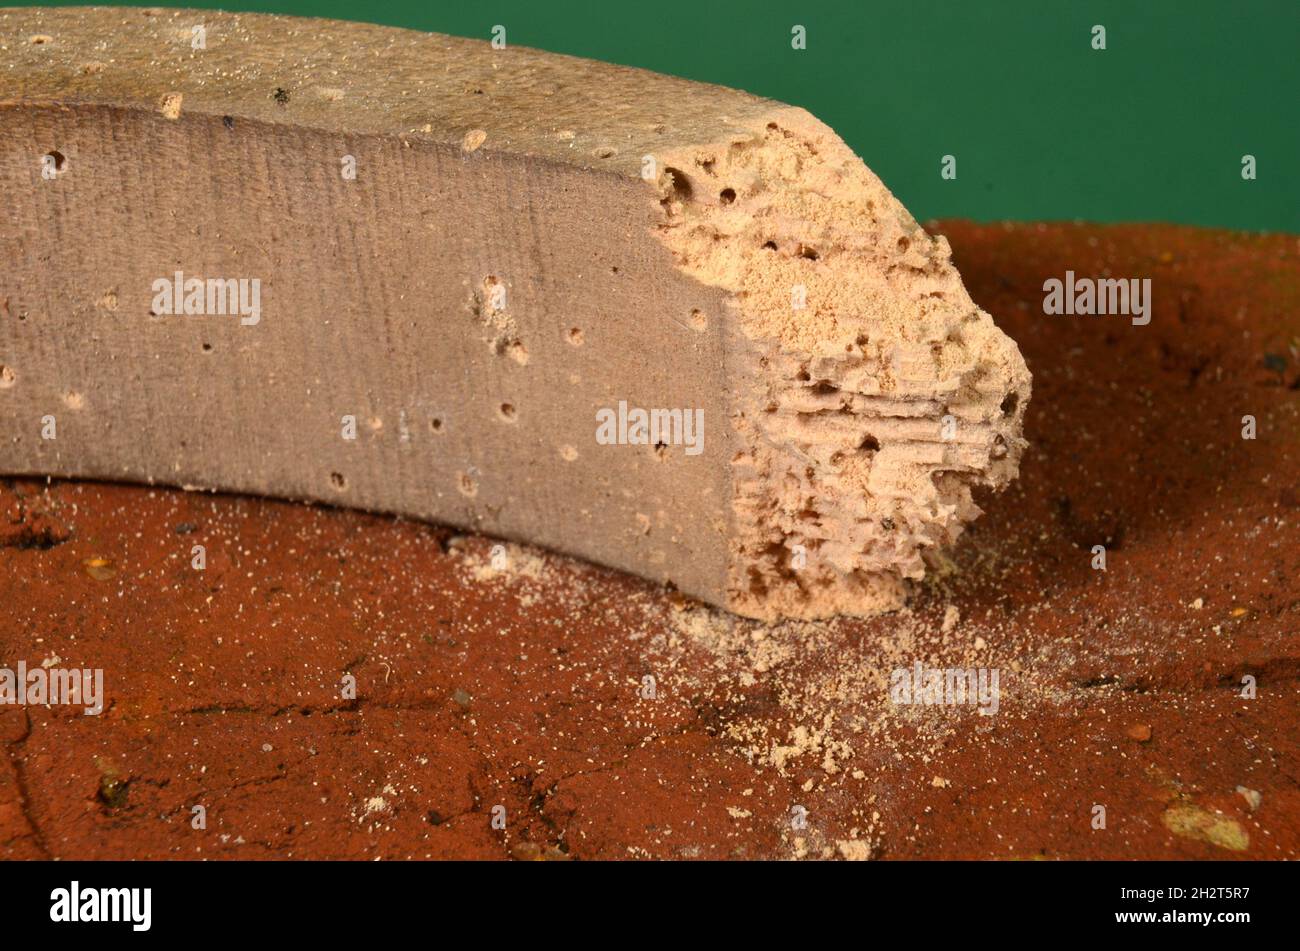 Macrofotografia su legno grezzo decaduto da comuni scarafaggi di mobili, la polvere in prossimità dell'oggetto indica che vi è recente attività di scarafaggi di mobili Foto Stock